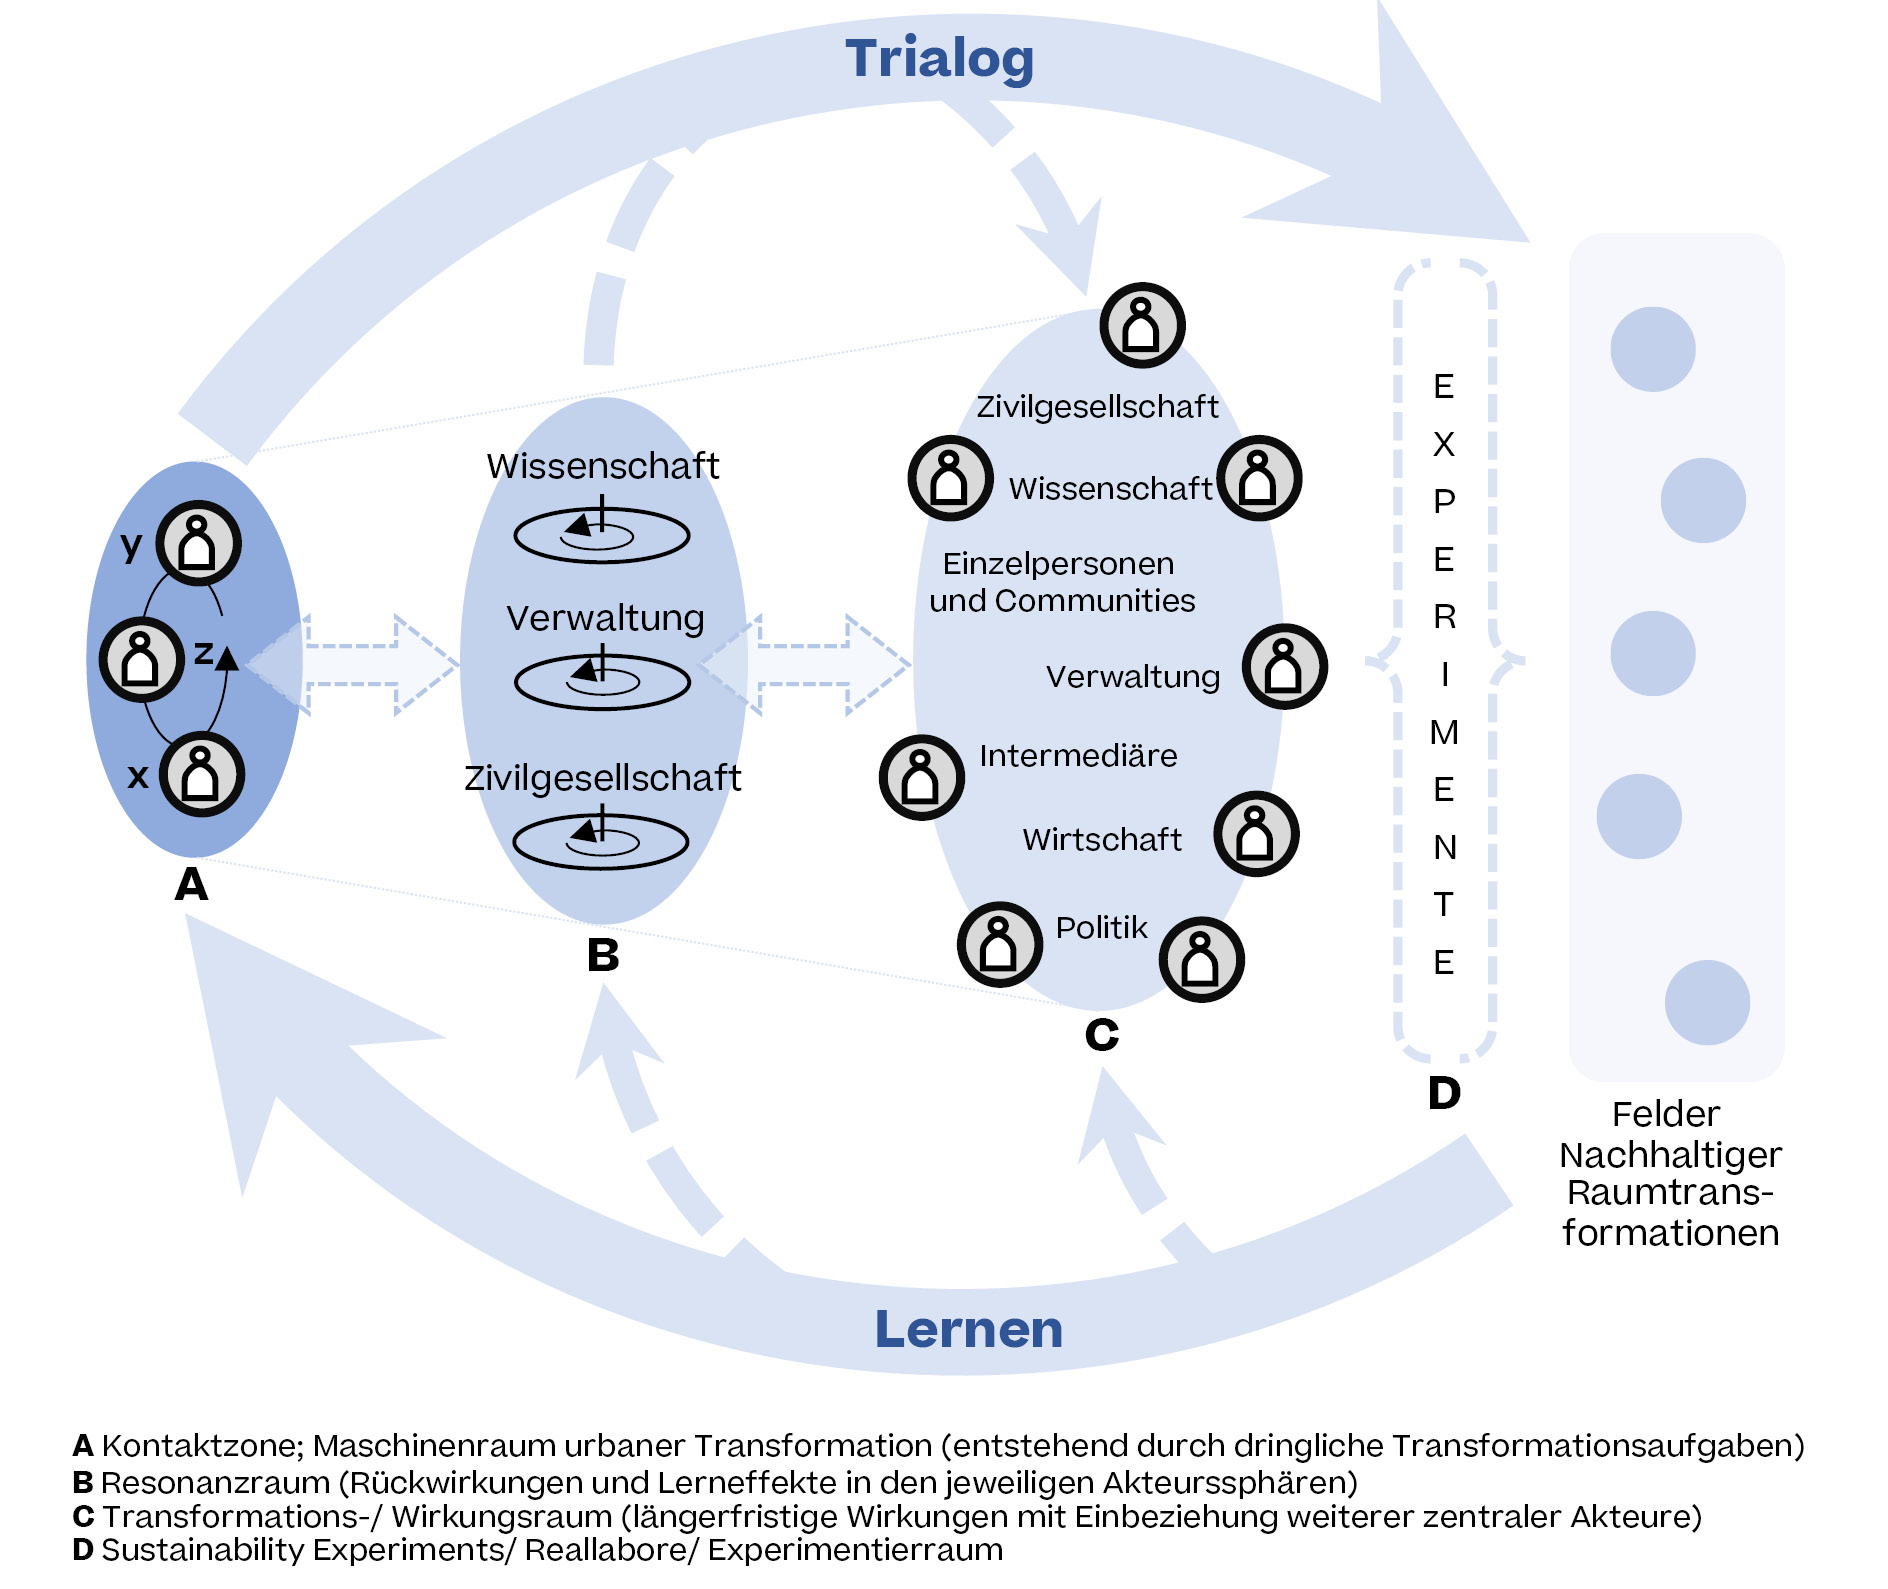 Abbildung 4 zeigt eine modellhafte Darstellung von Veränderungs- und Lernpfaden durch den Trialog. 